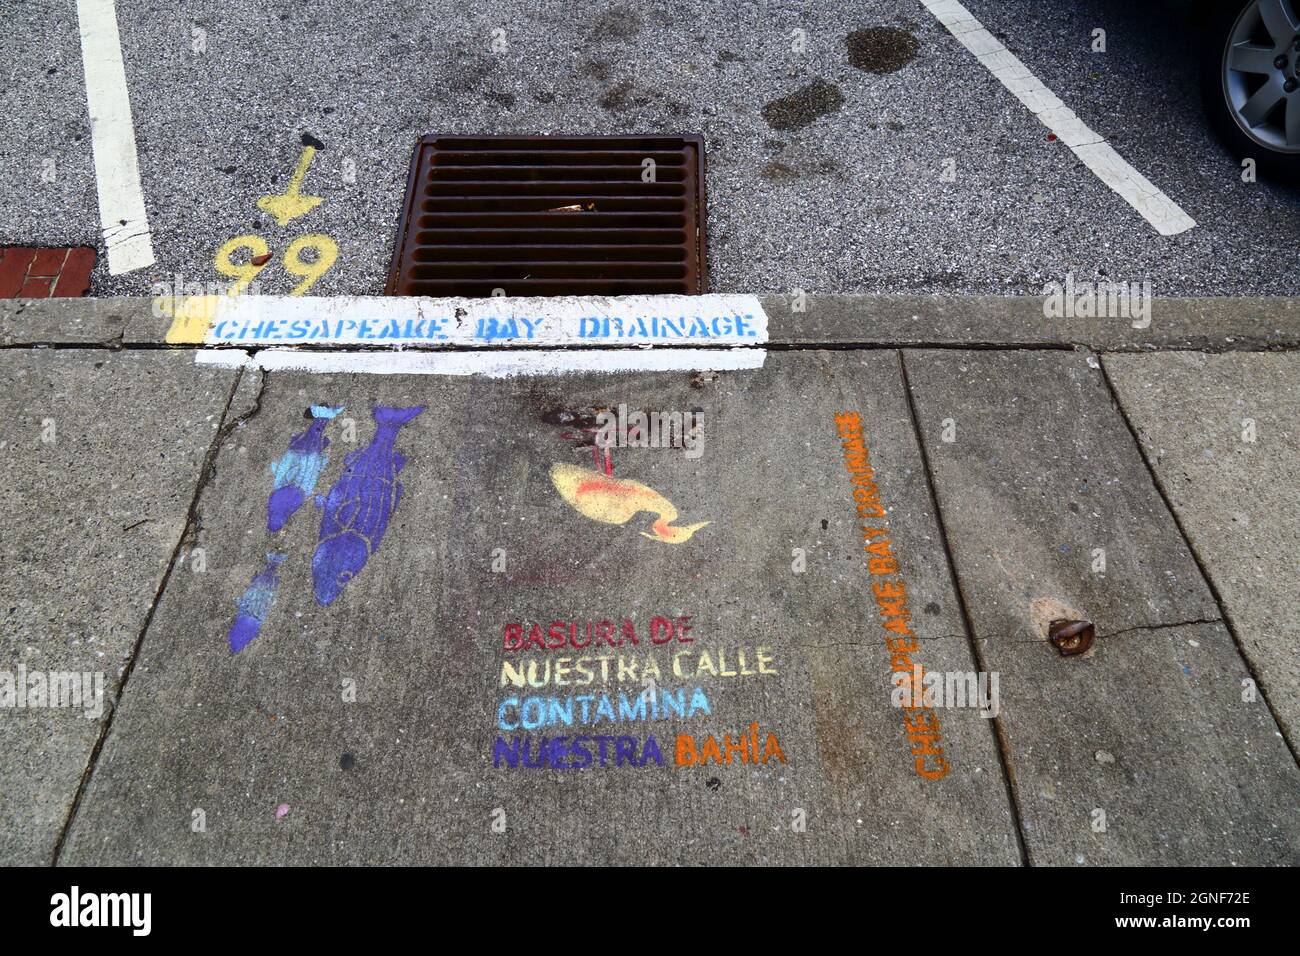 Schreiben in spanischer Sprache auf dem Bürgersteig neben einem Abfluss, der die Menschen aufsagt, keinen Abfall fallen zu lassen, der die chestapeake Bay, Baltimore, USA, kontaminiert Stockfoto